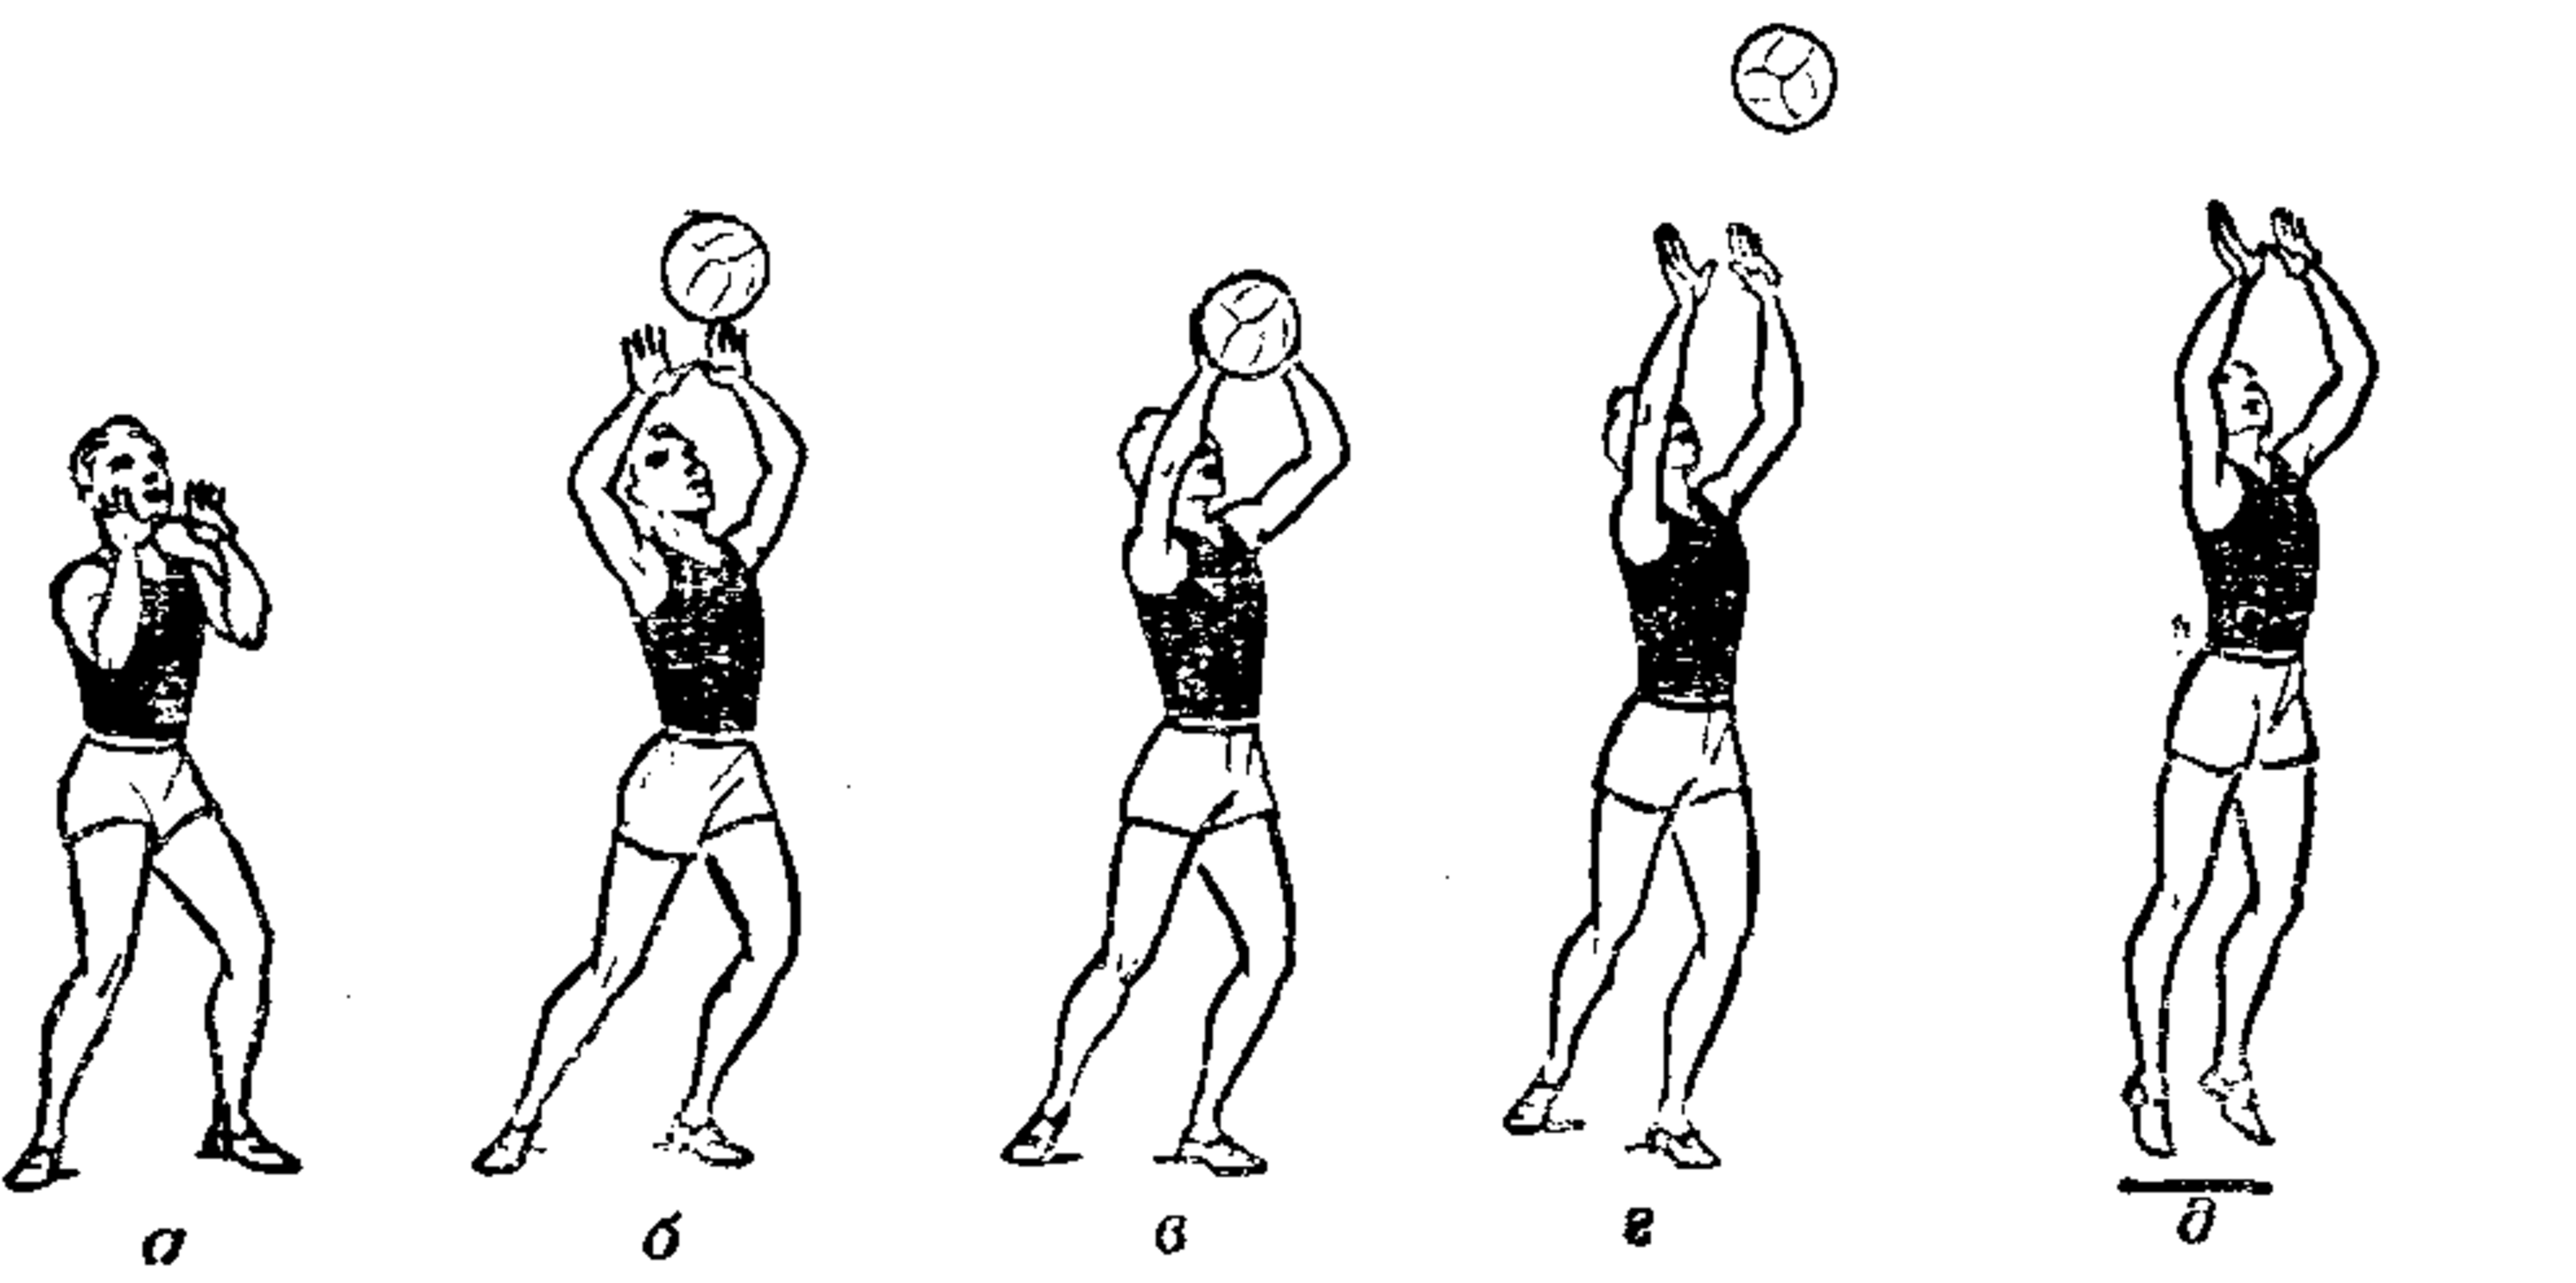 Подача одной рукой снизу. Волейбол техника верхняя передача в волейболе. Техника передачи мяча в волейболе. Волейбол верхний прием и передача мяча техника. Техника приема и передачи мяча сверху двумя руками в волейболе.